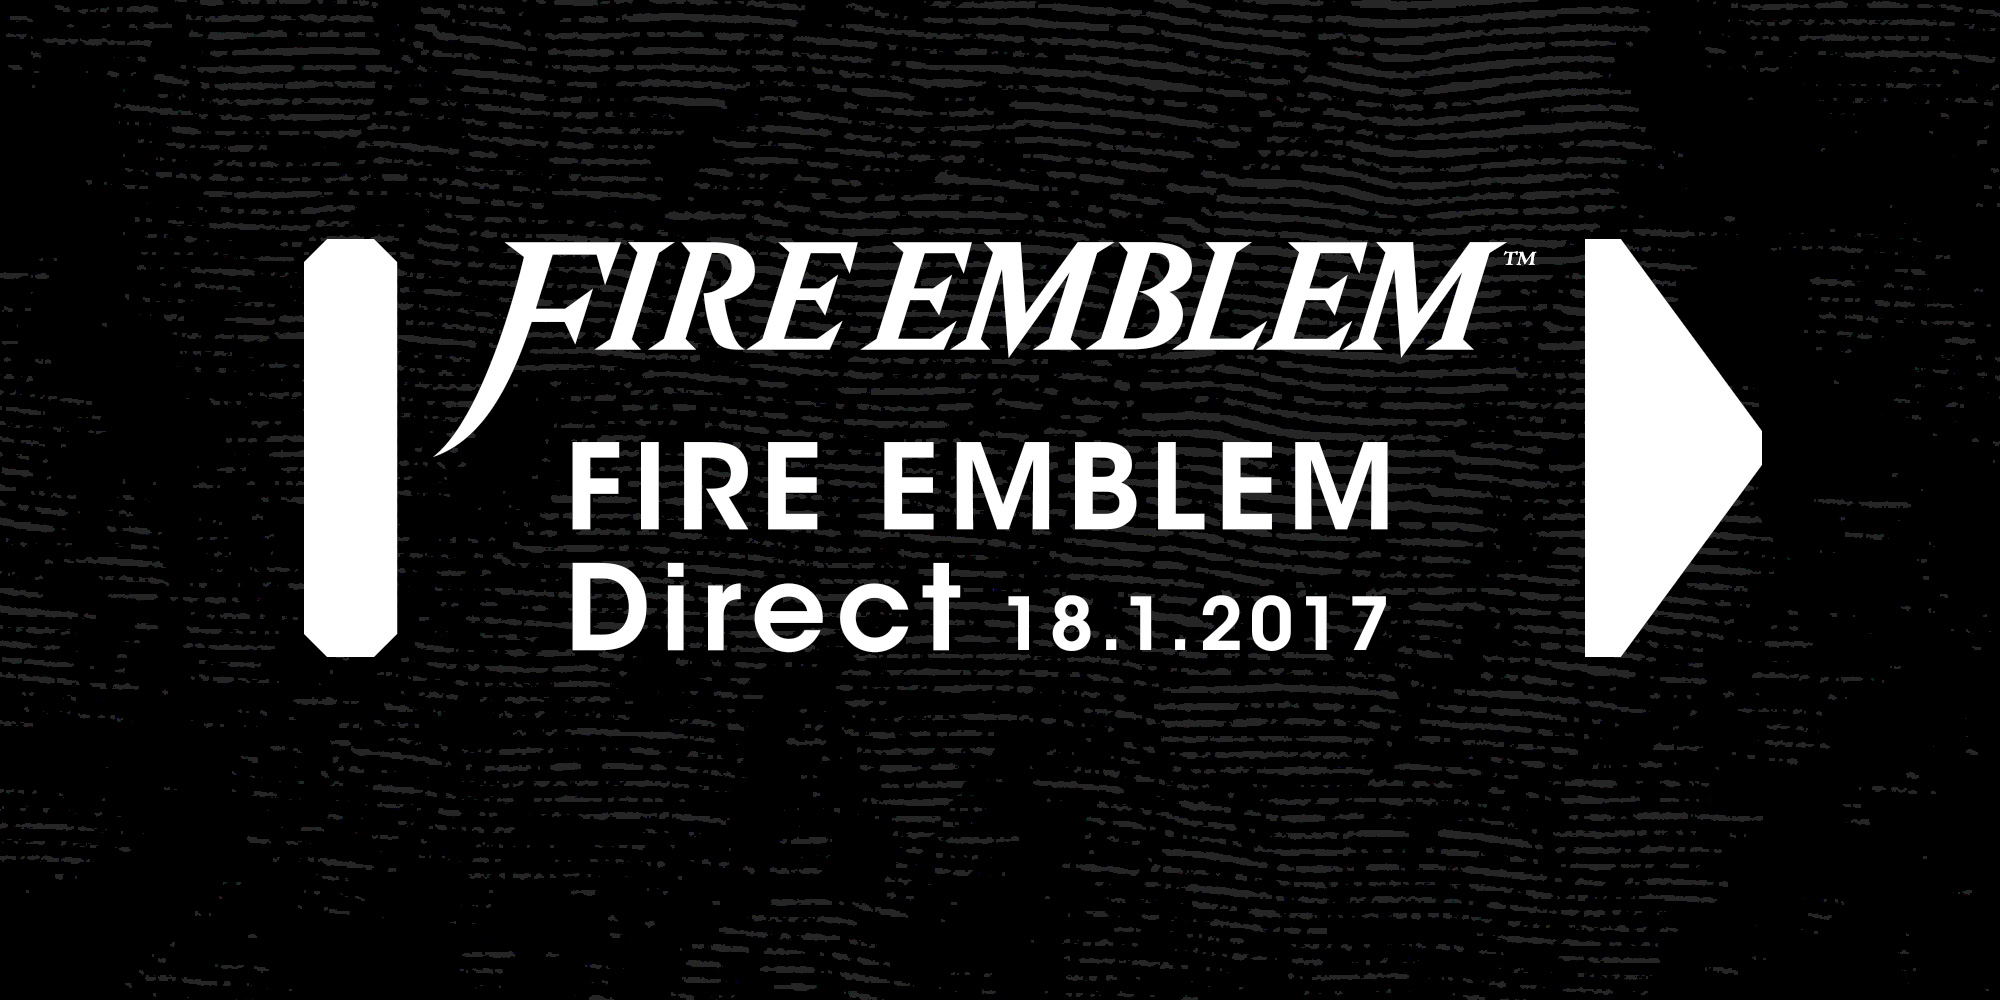 Nintendo Direct dedicada a Fire Emblem será transmitida amanhã, dia 18 de janeiro